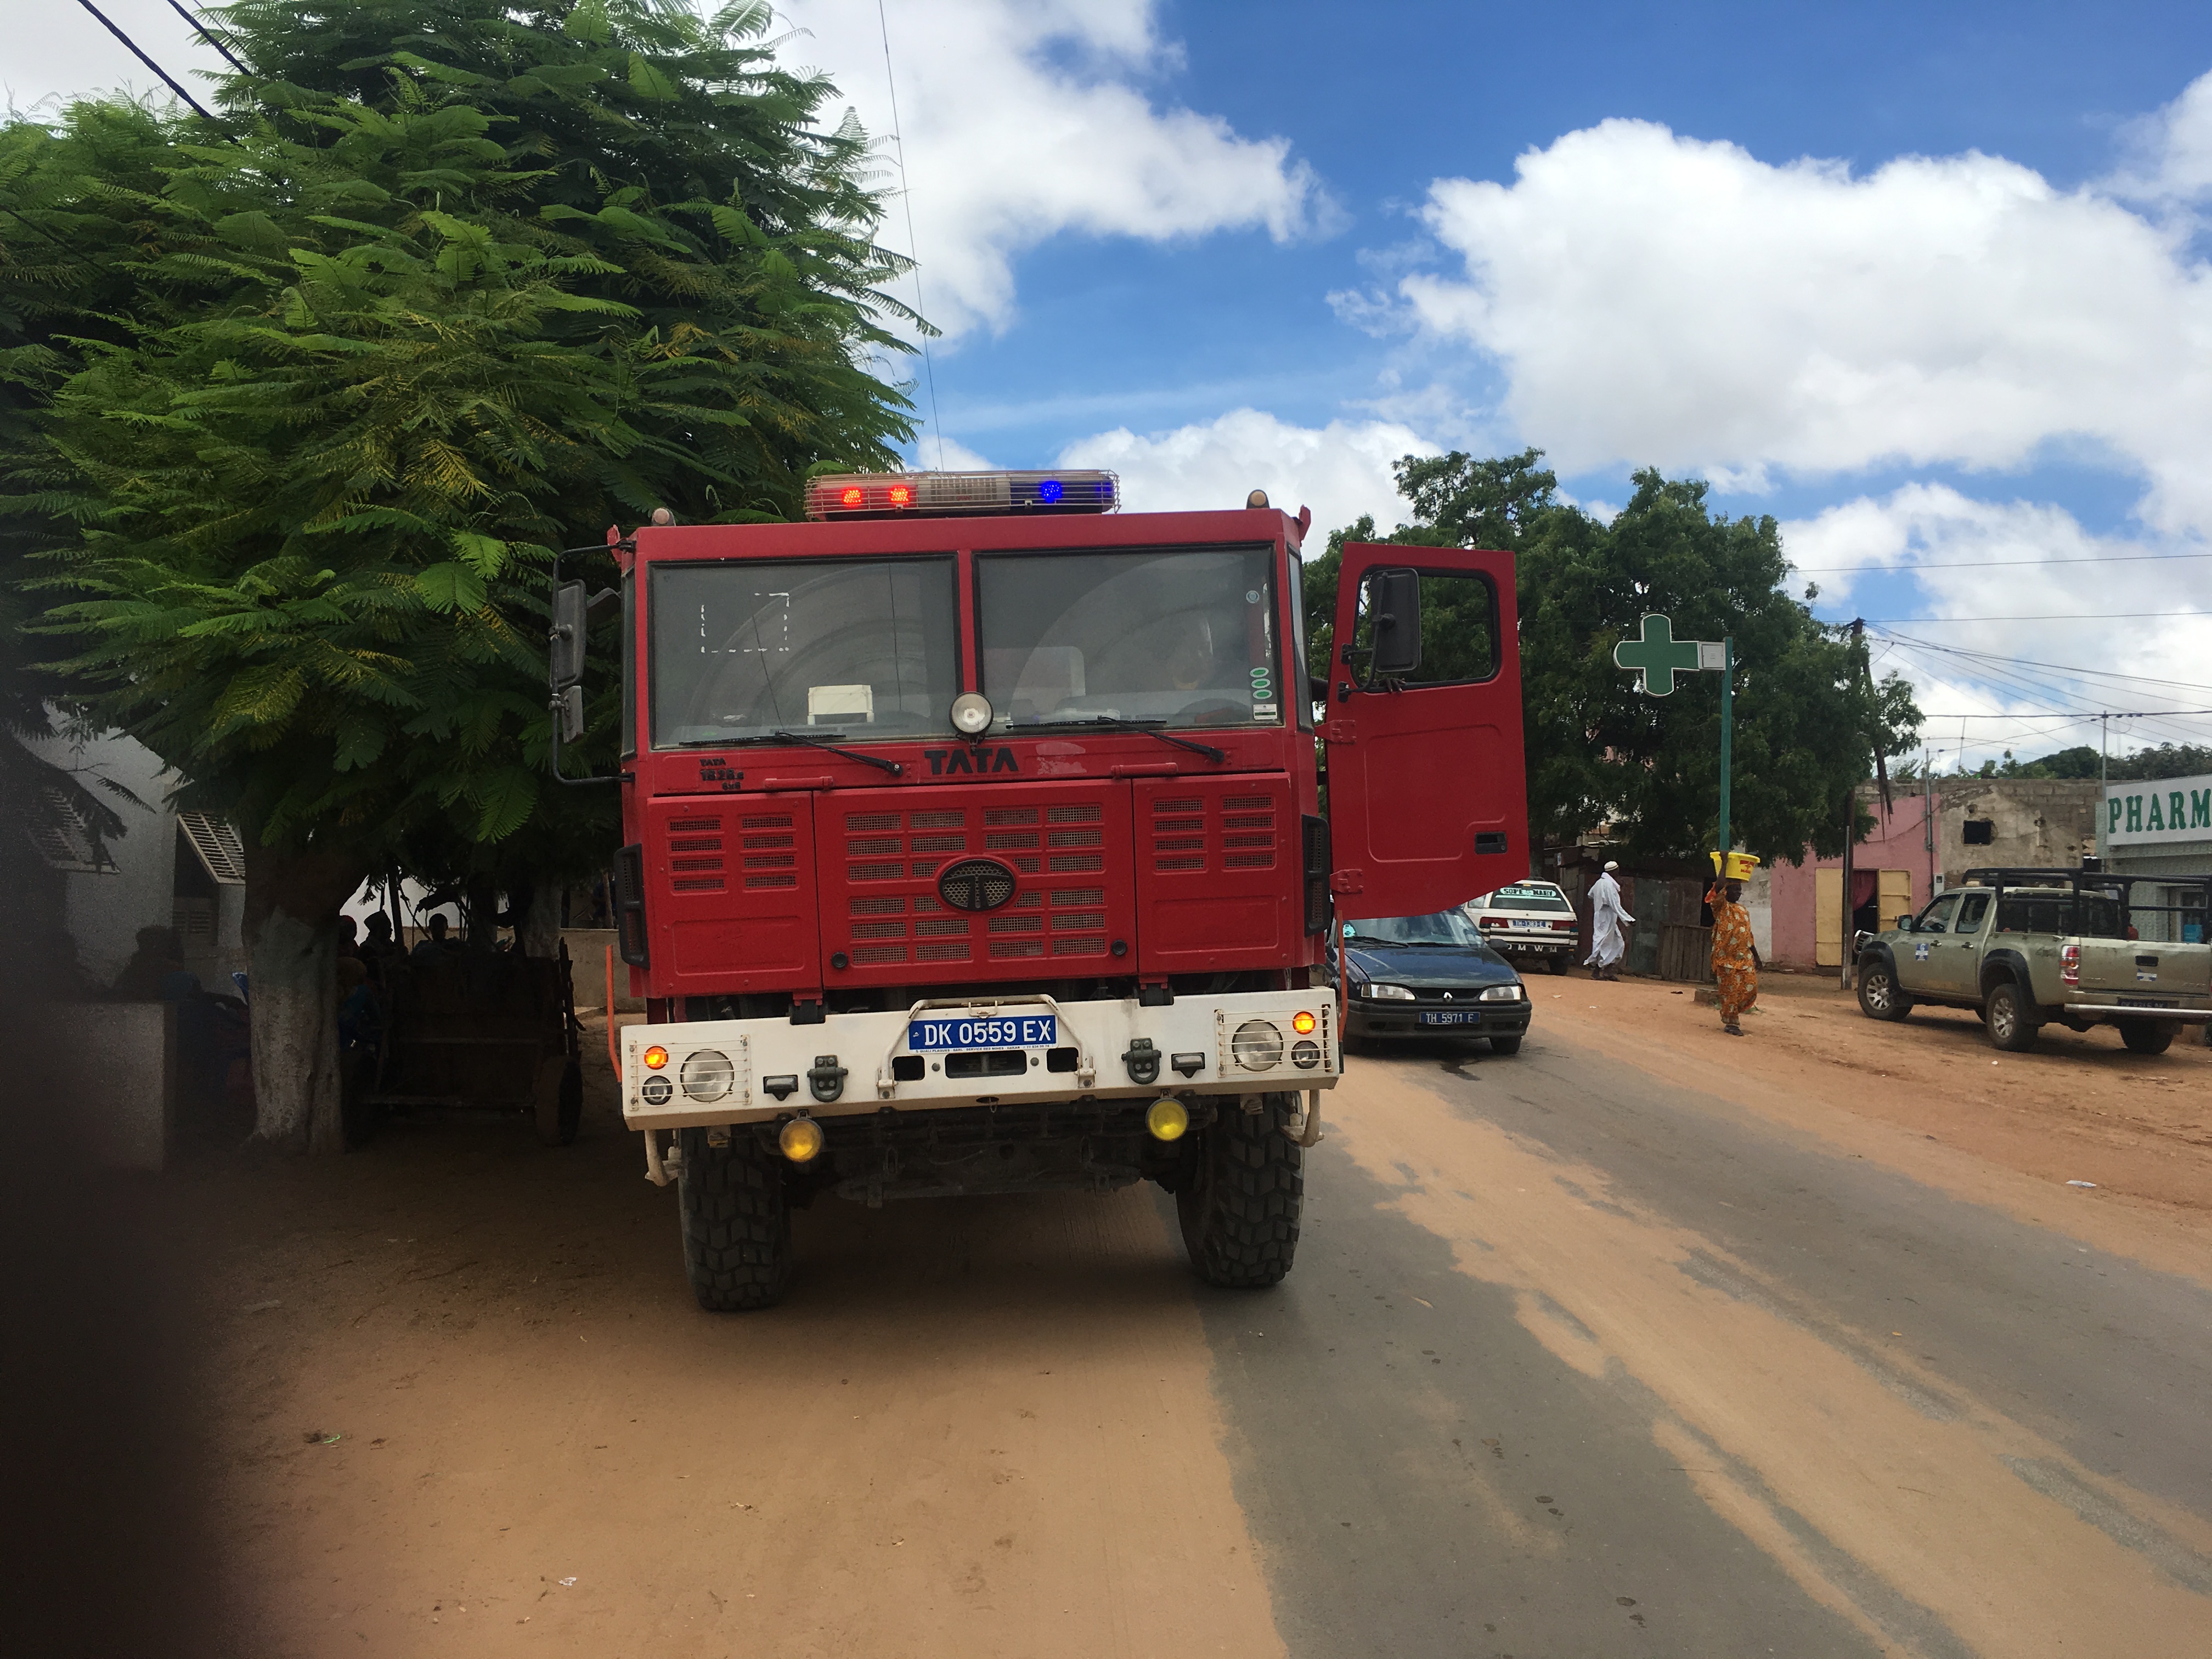 Grave accident à Sicap Mbao : un camion heurte un minibus Tata et tue plusieurs personnes